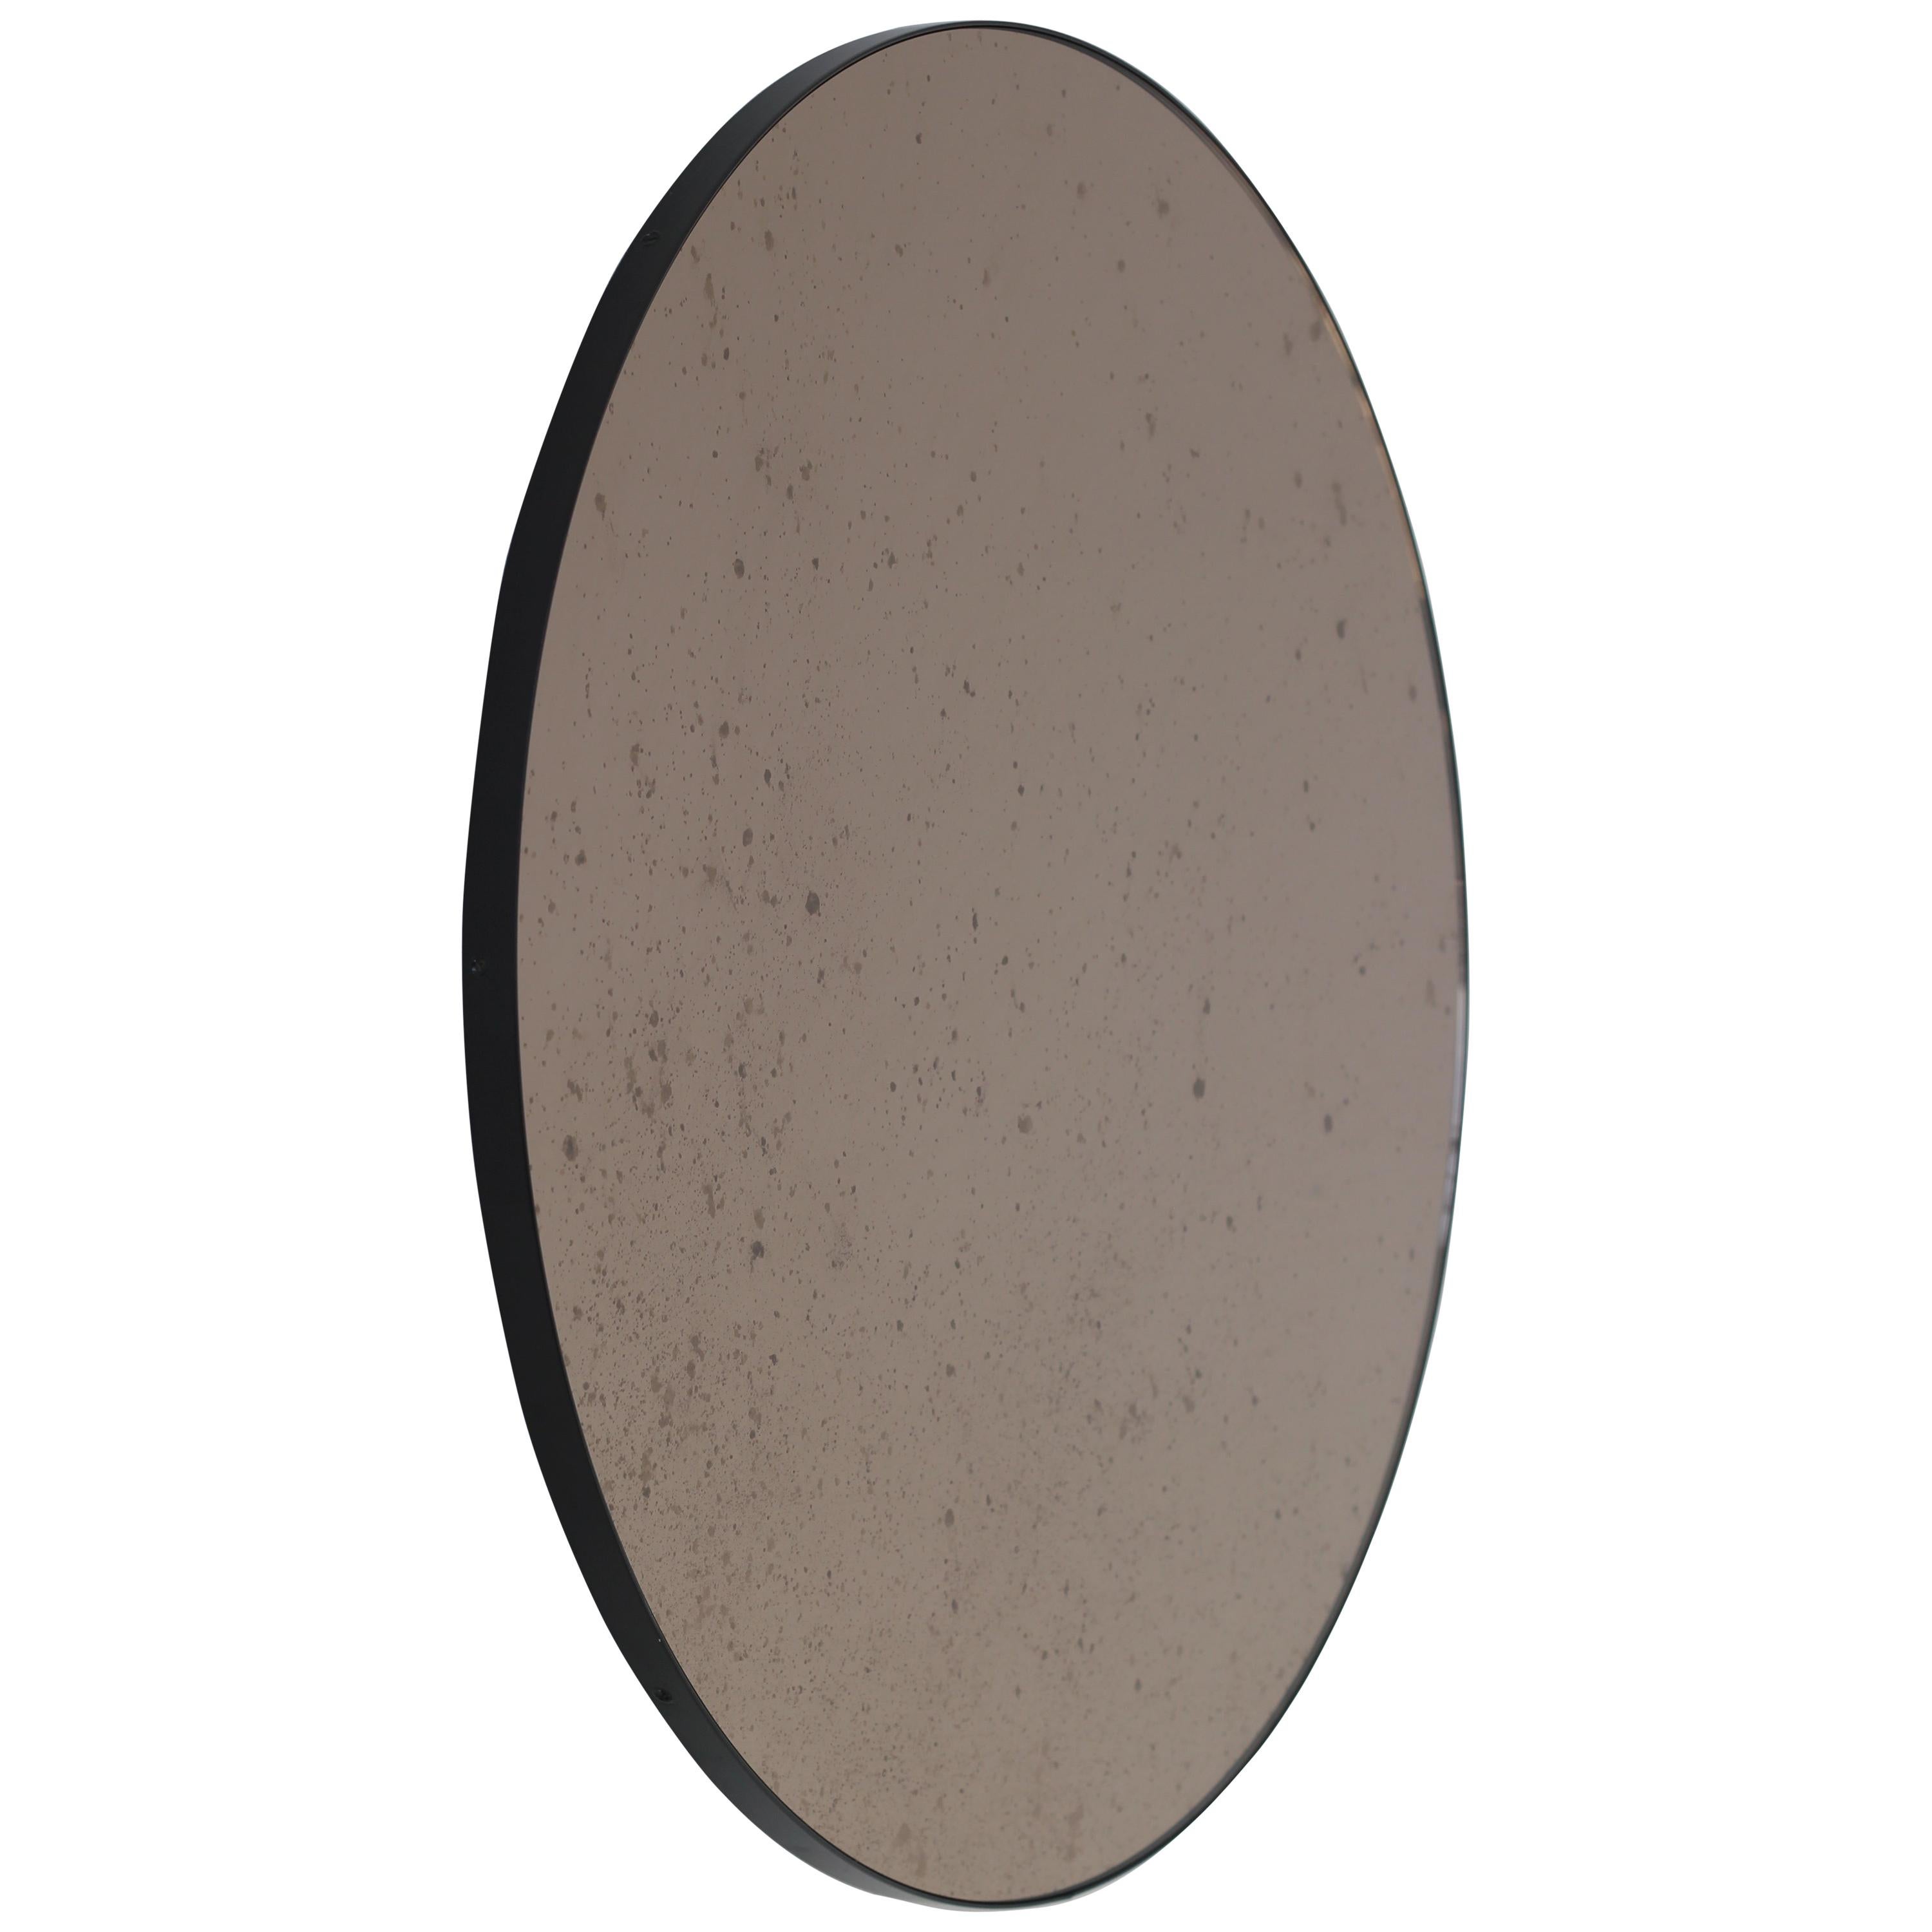 Orbis Round Bronze Antiqued Modernist Bespoke Mirror with Black Frame - Medium